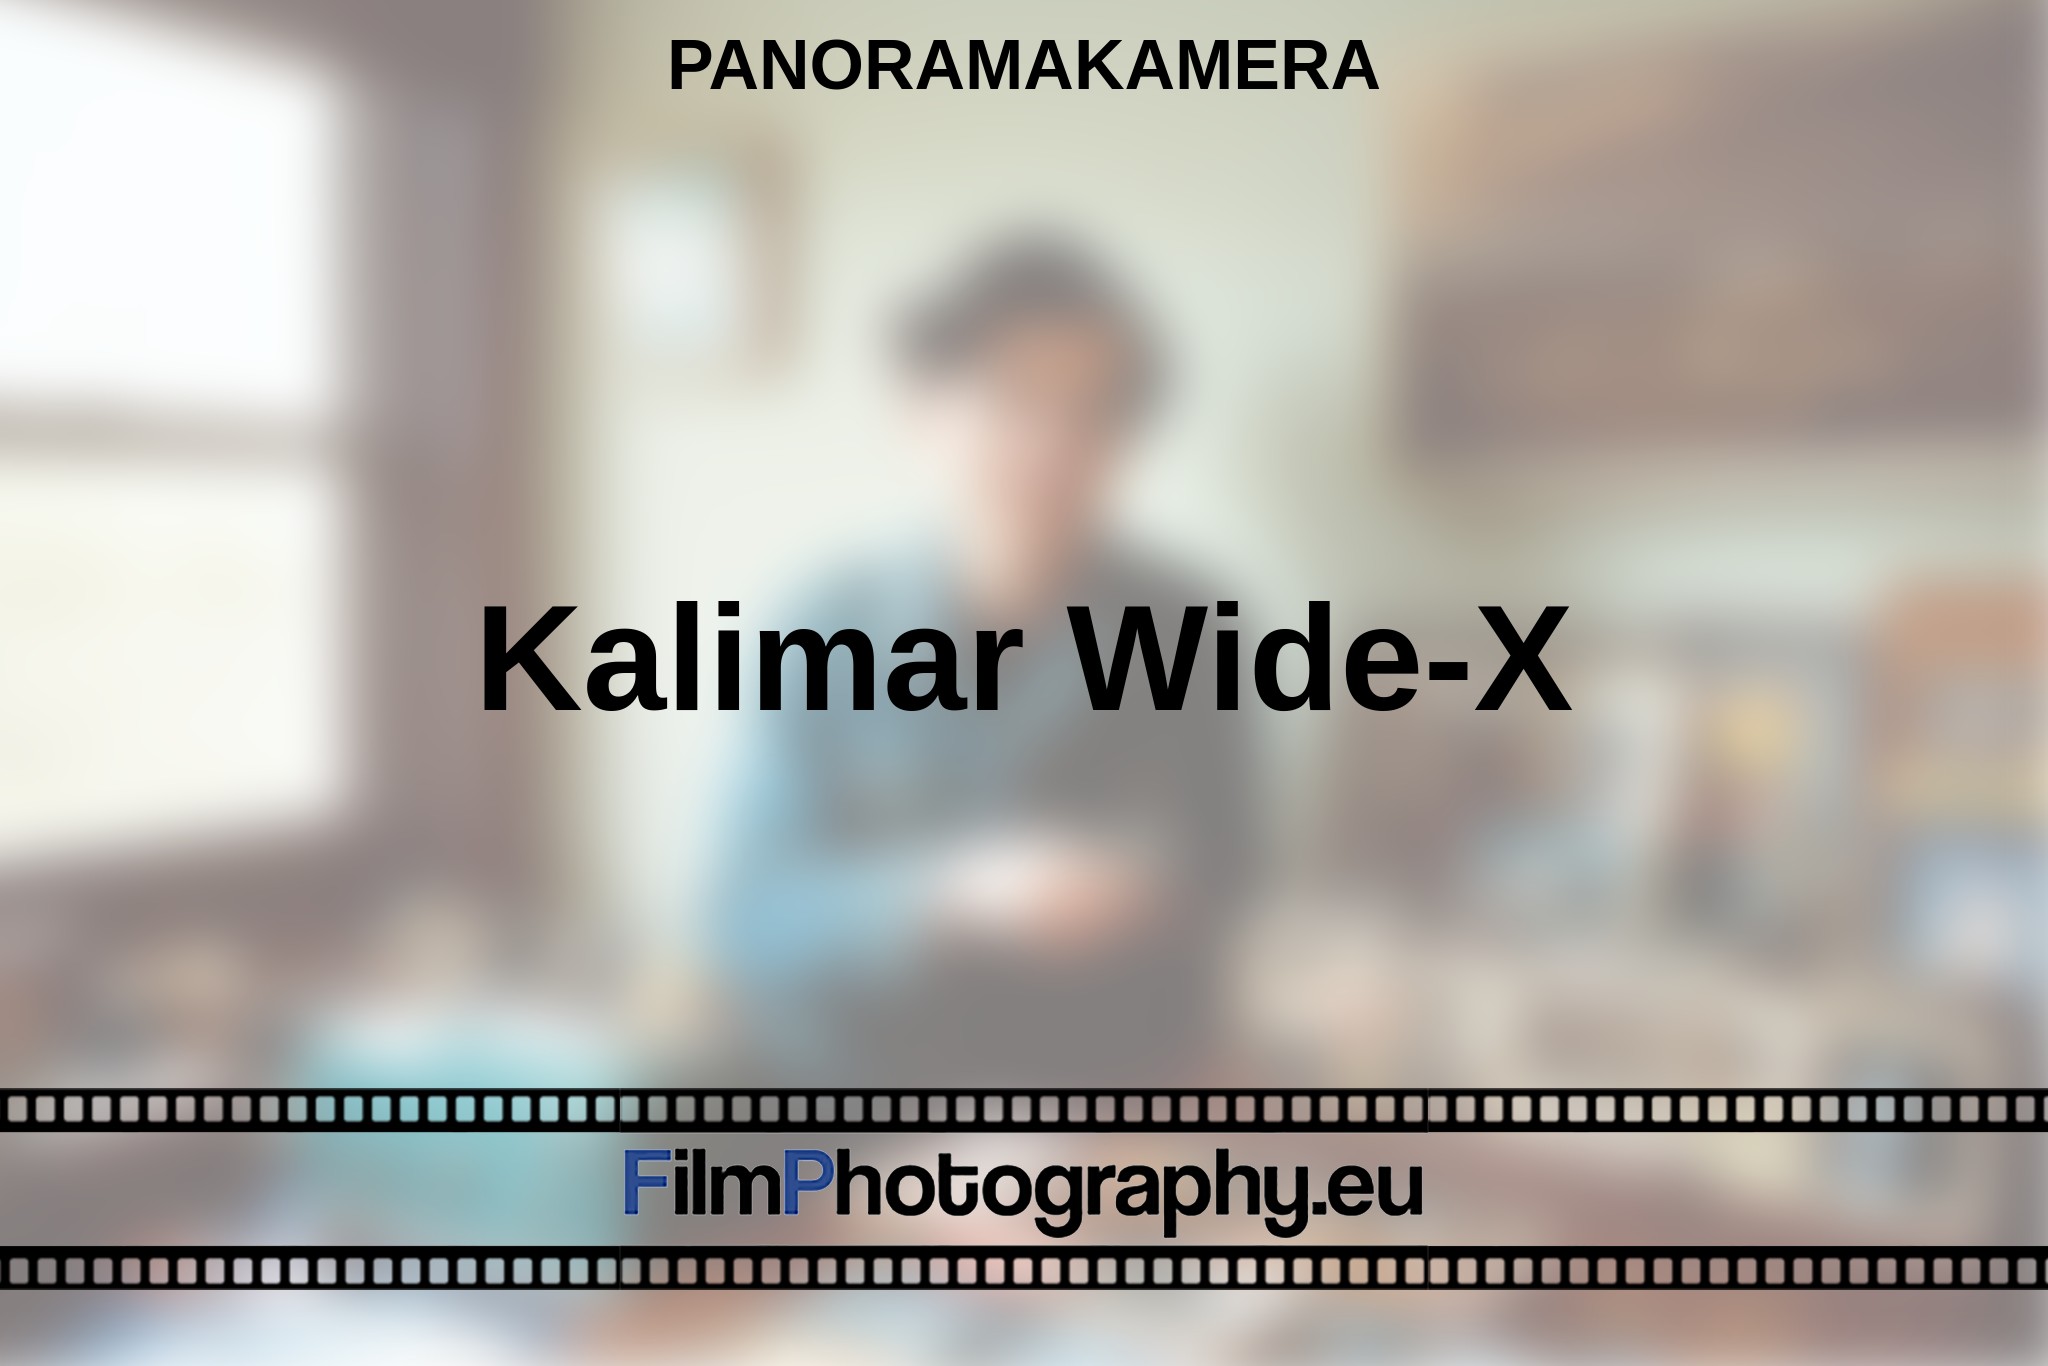 kalimar-wide-x-panoramakamera-bnv.jpg